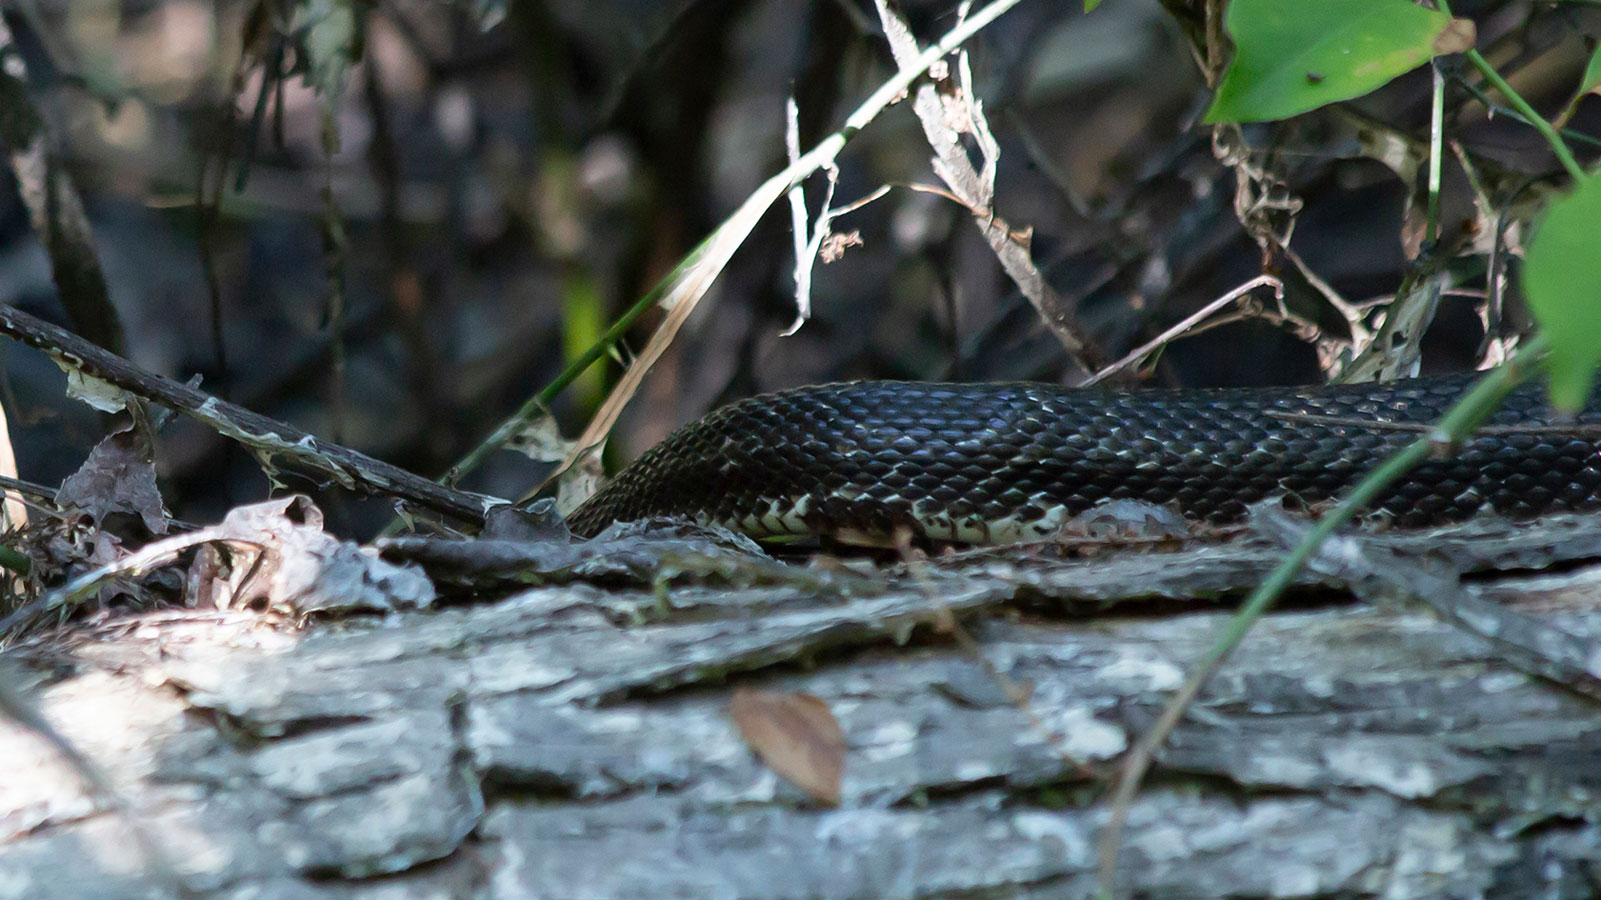 Black western rat snake (chicken snake) crawling over a log